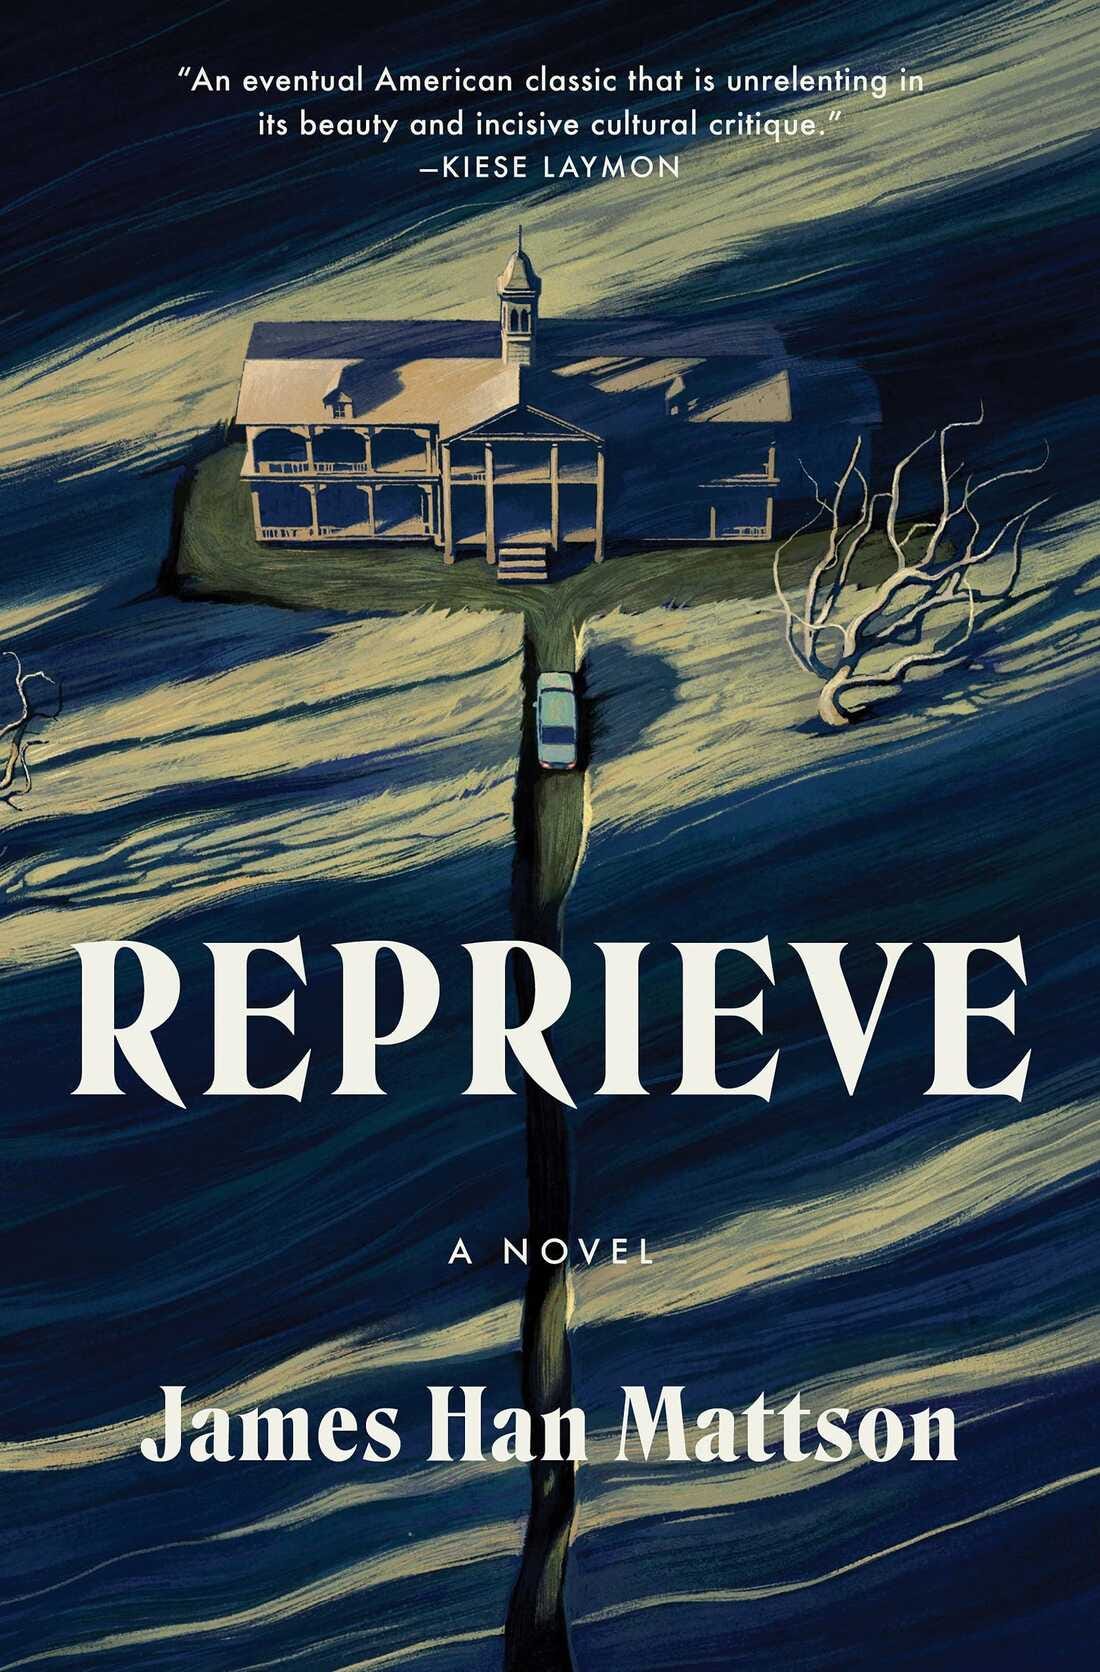 Reprieve, by James Han Mattson